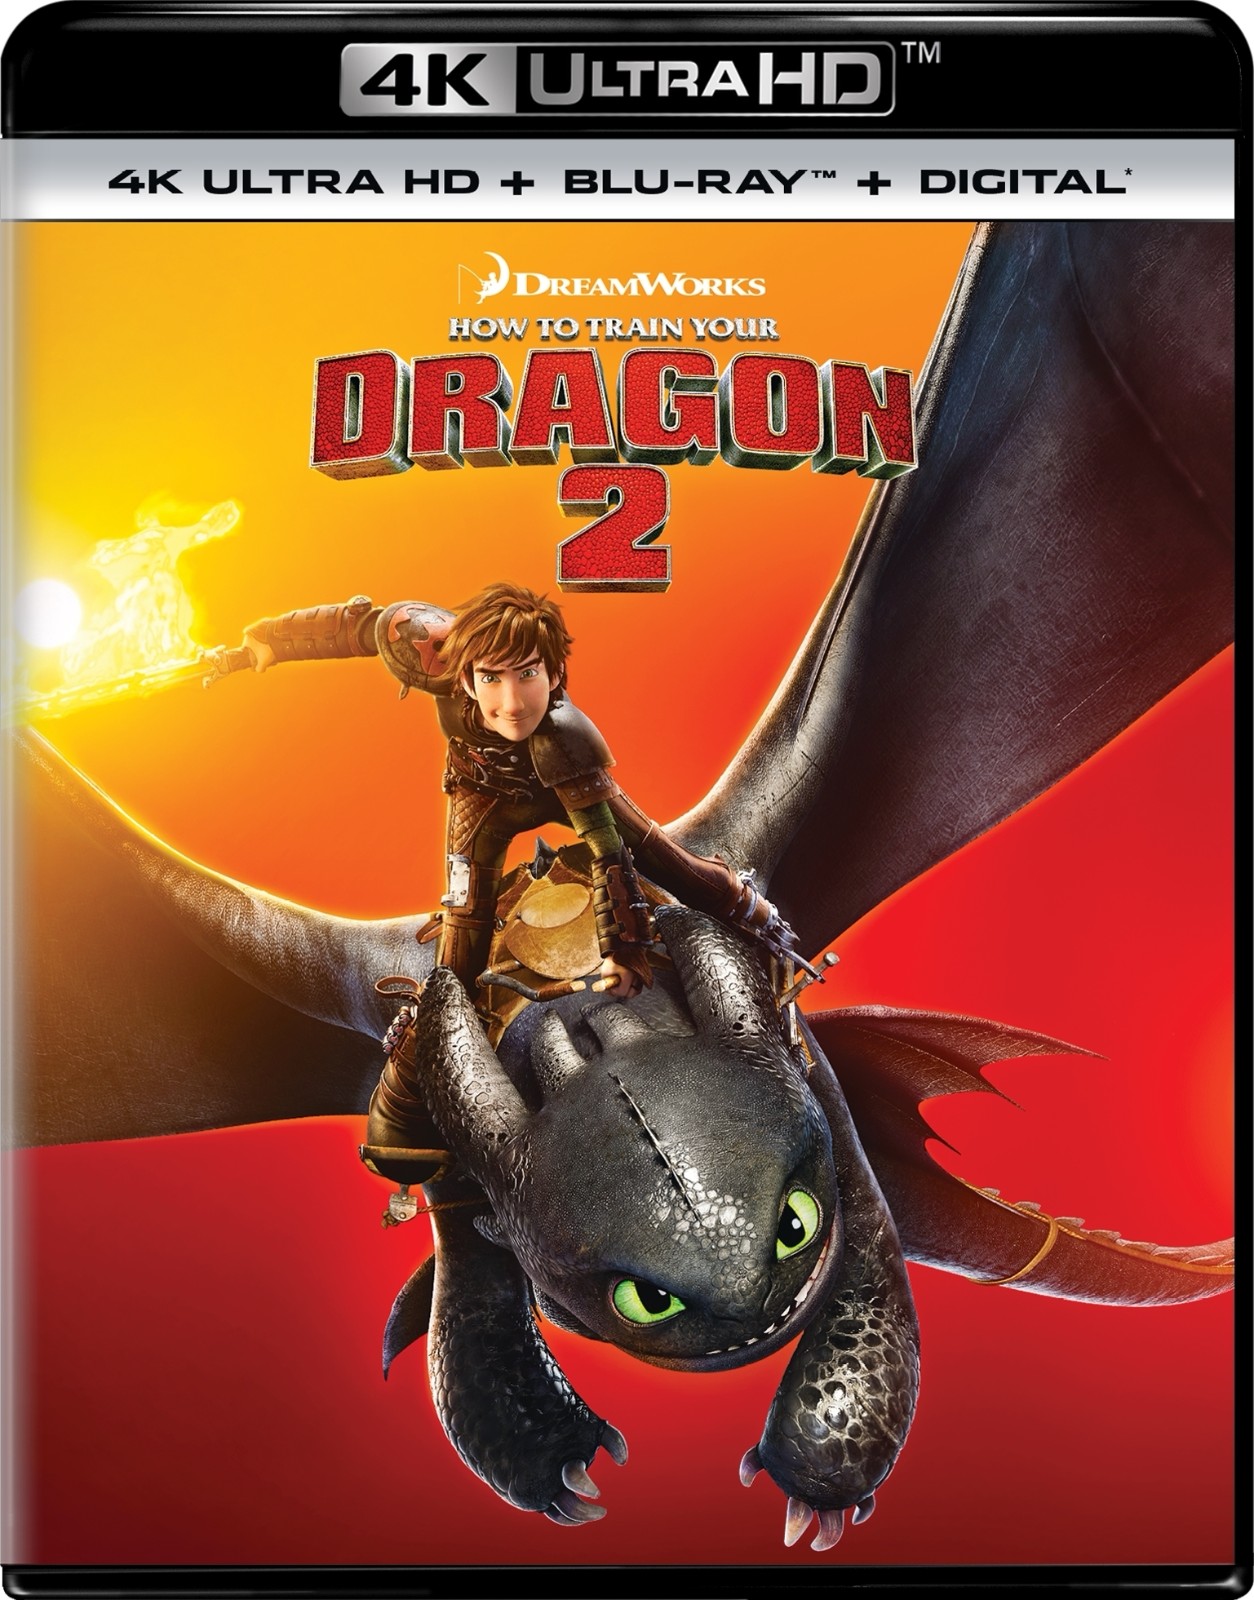 [驯龙记2].How.to.Train.Your.Dragon.2.2014.3D.BluRay.1080p.AVC.DTS-HD.MA.7.1-LKS   37.86G4 H5 g0 _2 m' A7 D, V3 p0 x8 j/ v-1.jpg